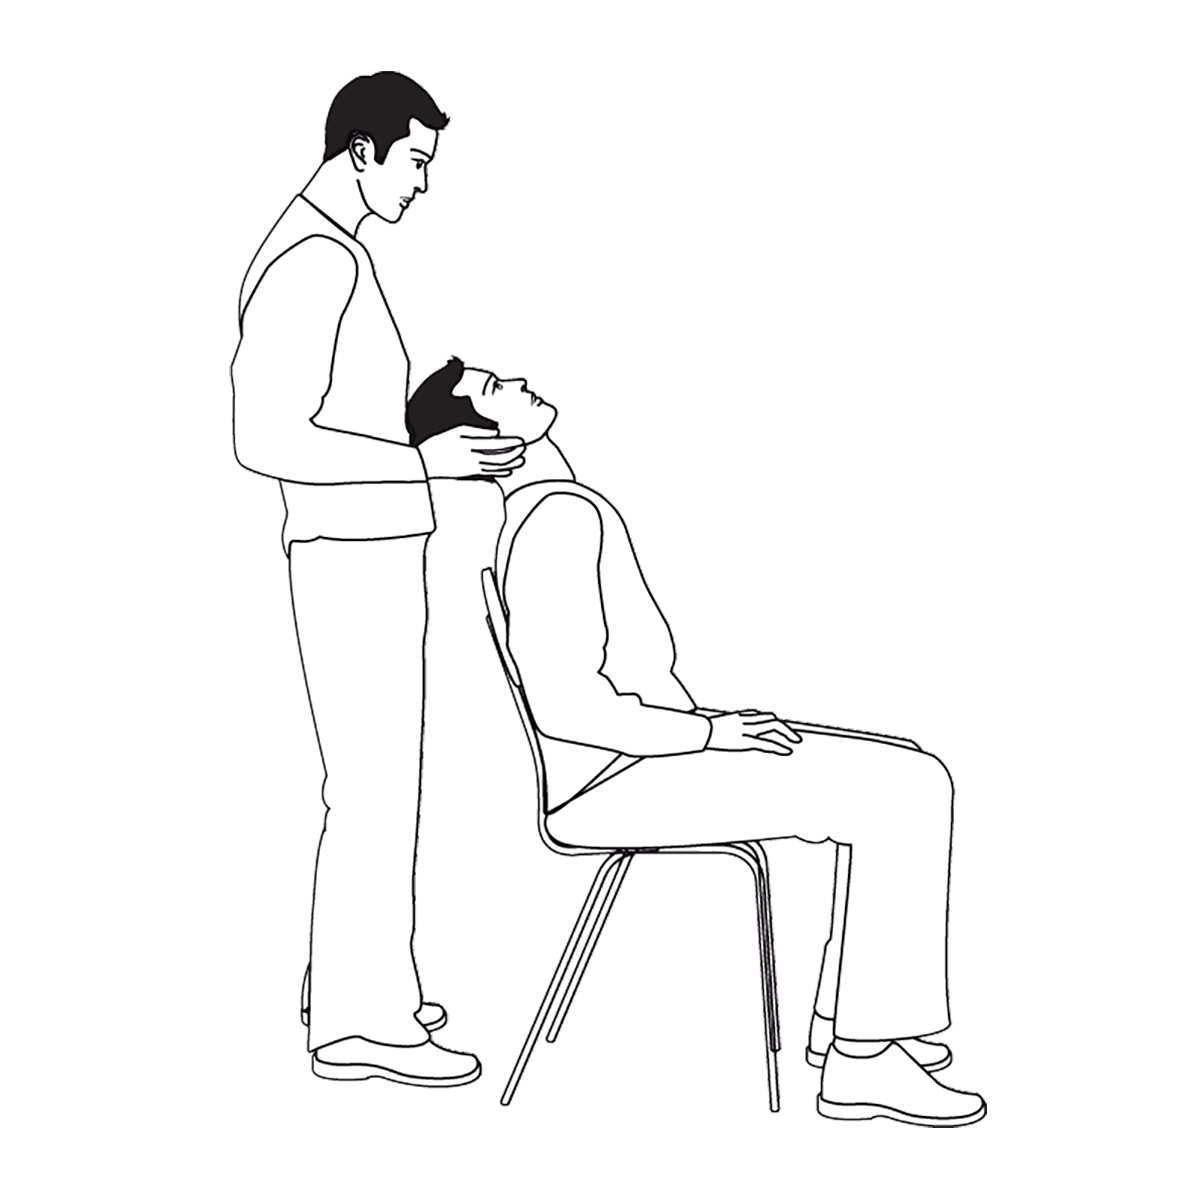 2. Laat de patiënt zitten en ga zelf achter de patiënt staan. Laat de patiënt het hoofd naar achteren buigen en naar boven kijken met beide ogen. Het hoofd van de patiënt kan tegen uw buik rusten.